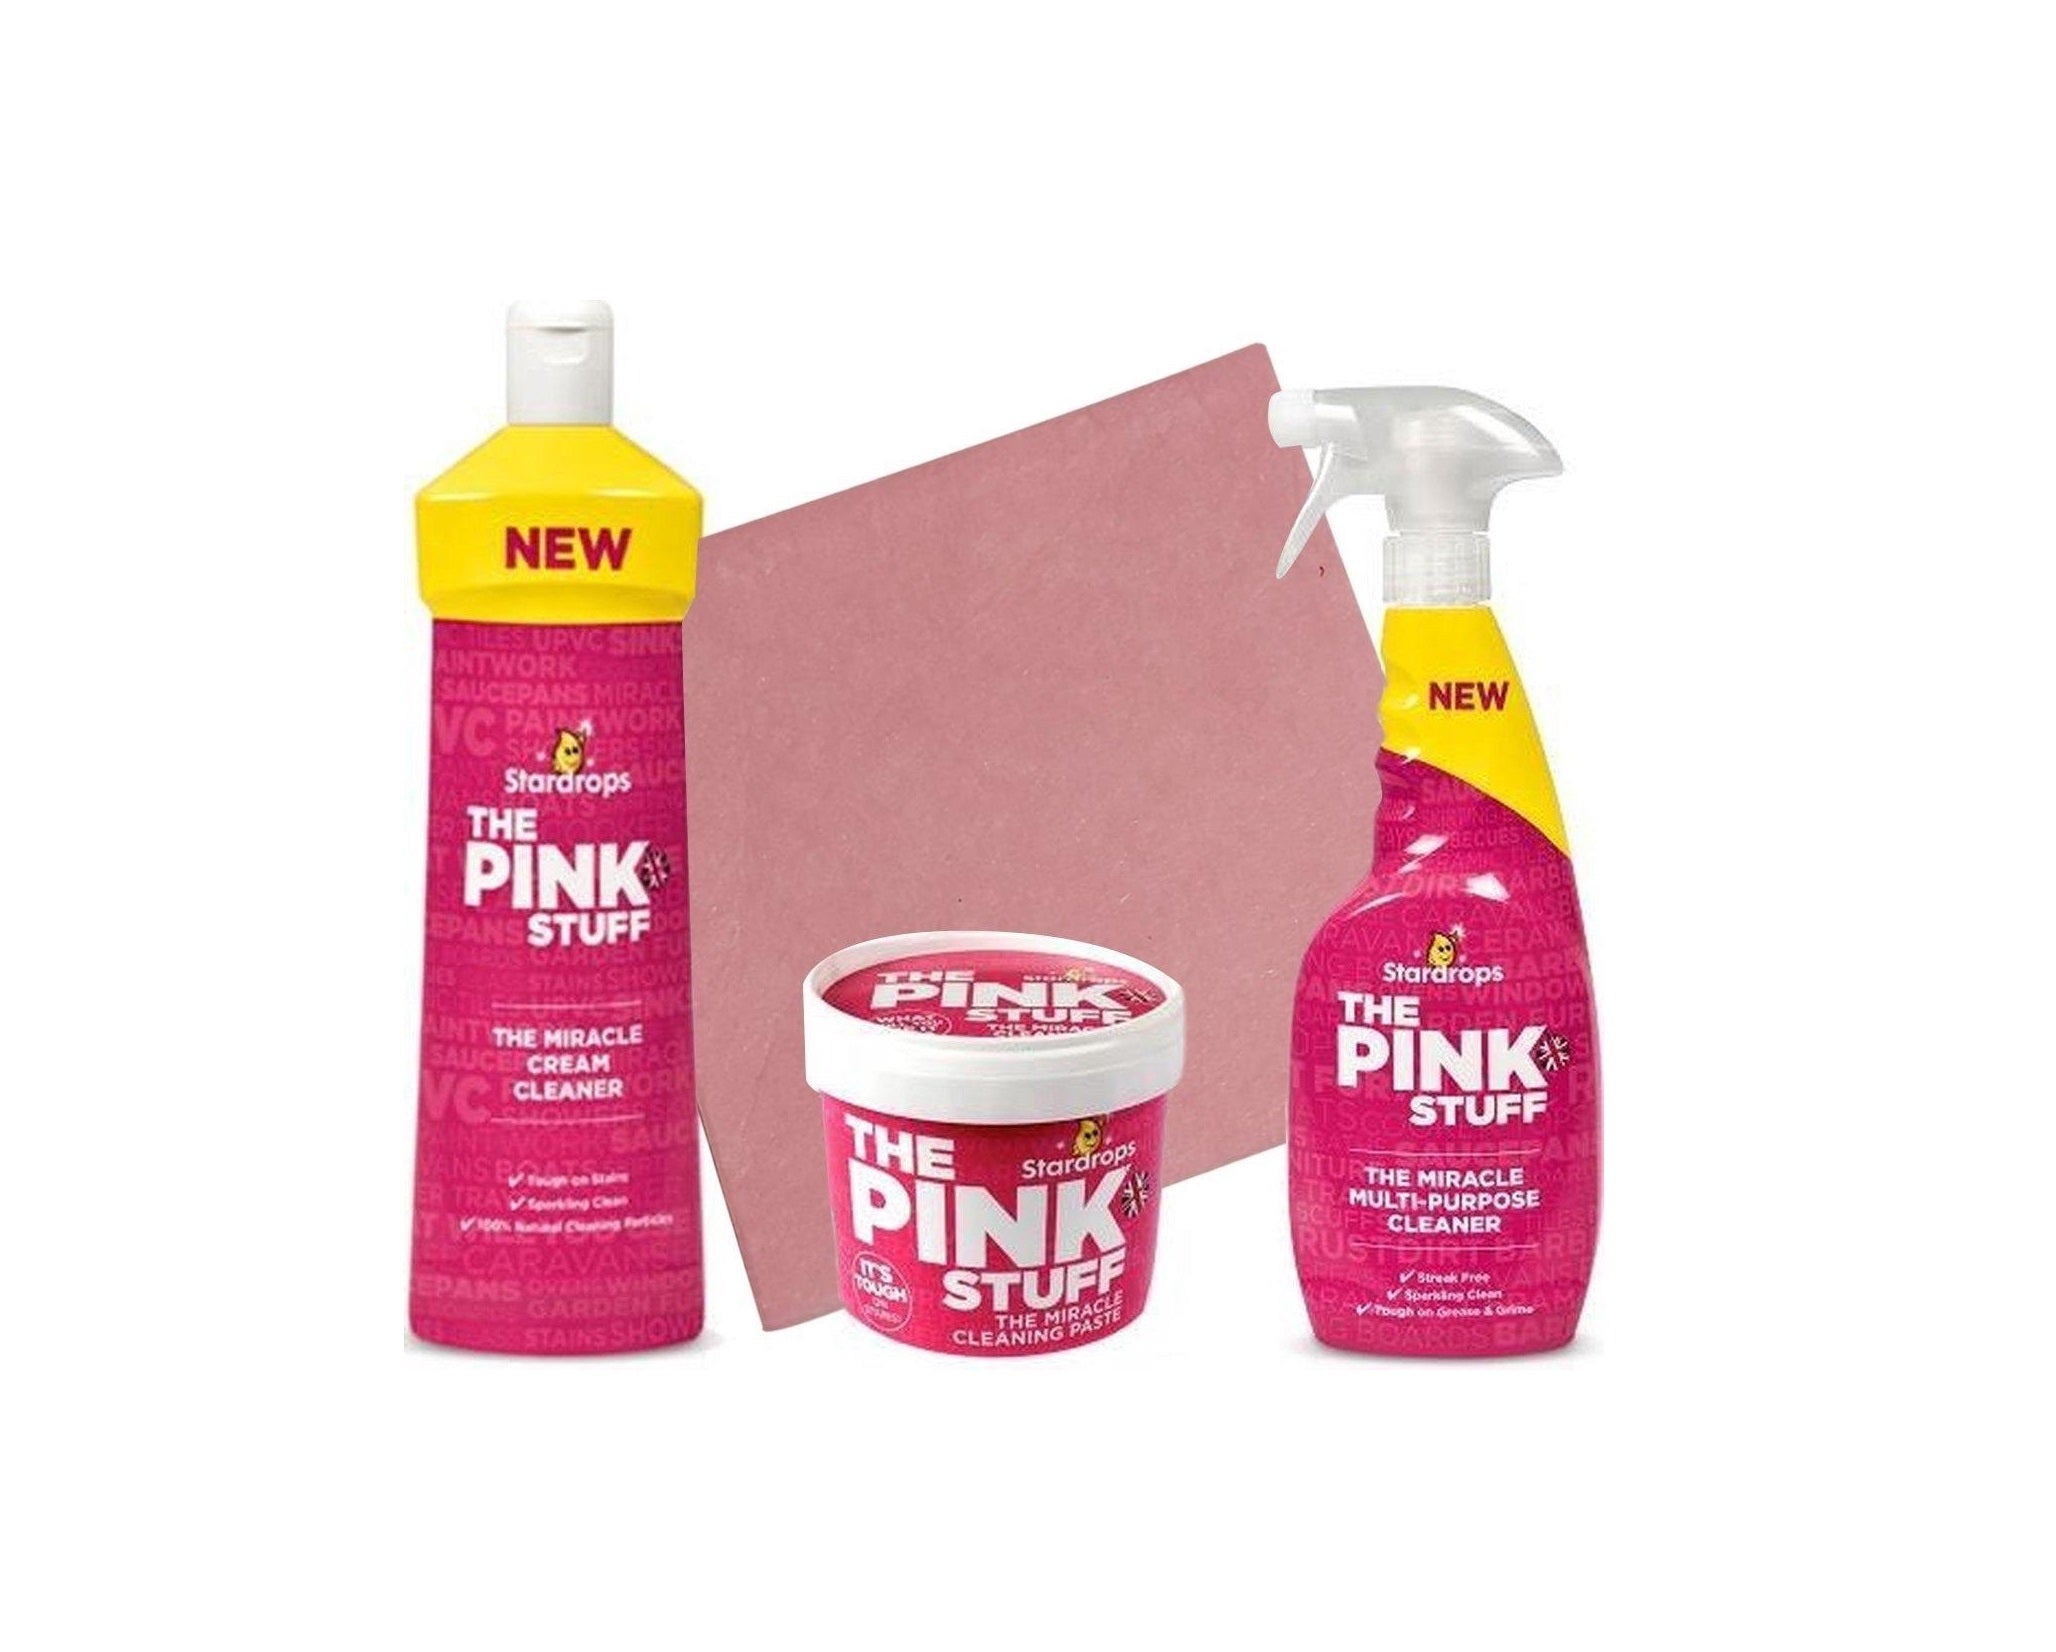 NOUVEAU The Pink Stuff, La poudre de toilette moussante miracle